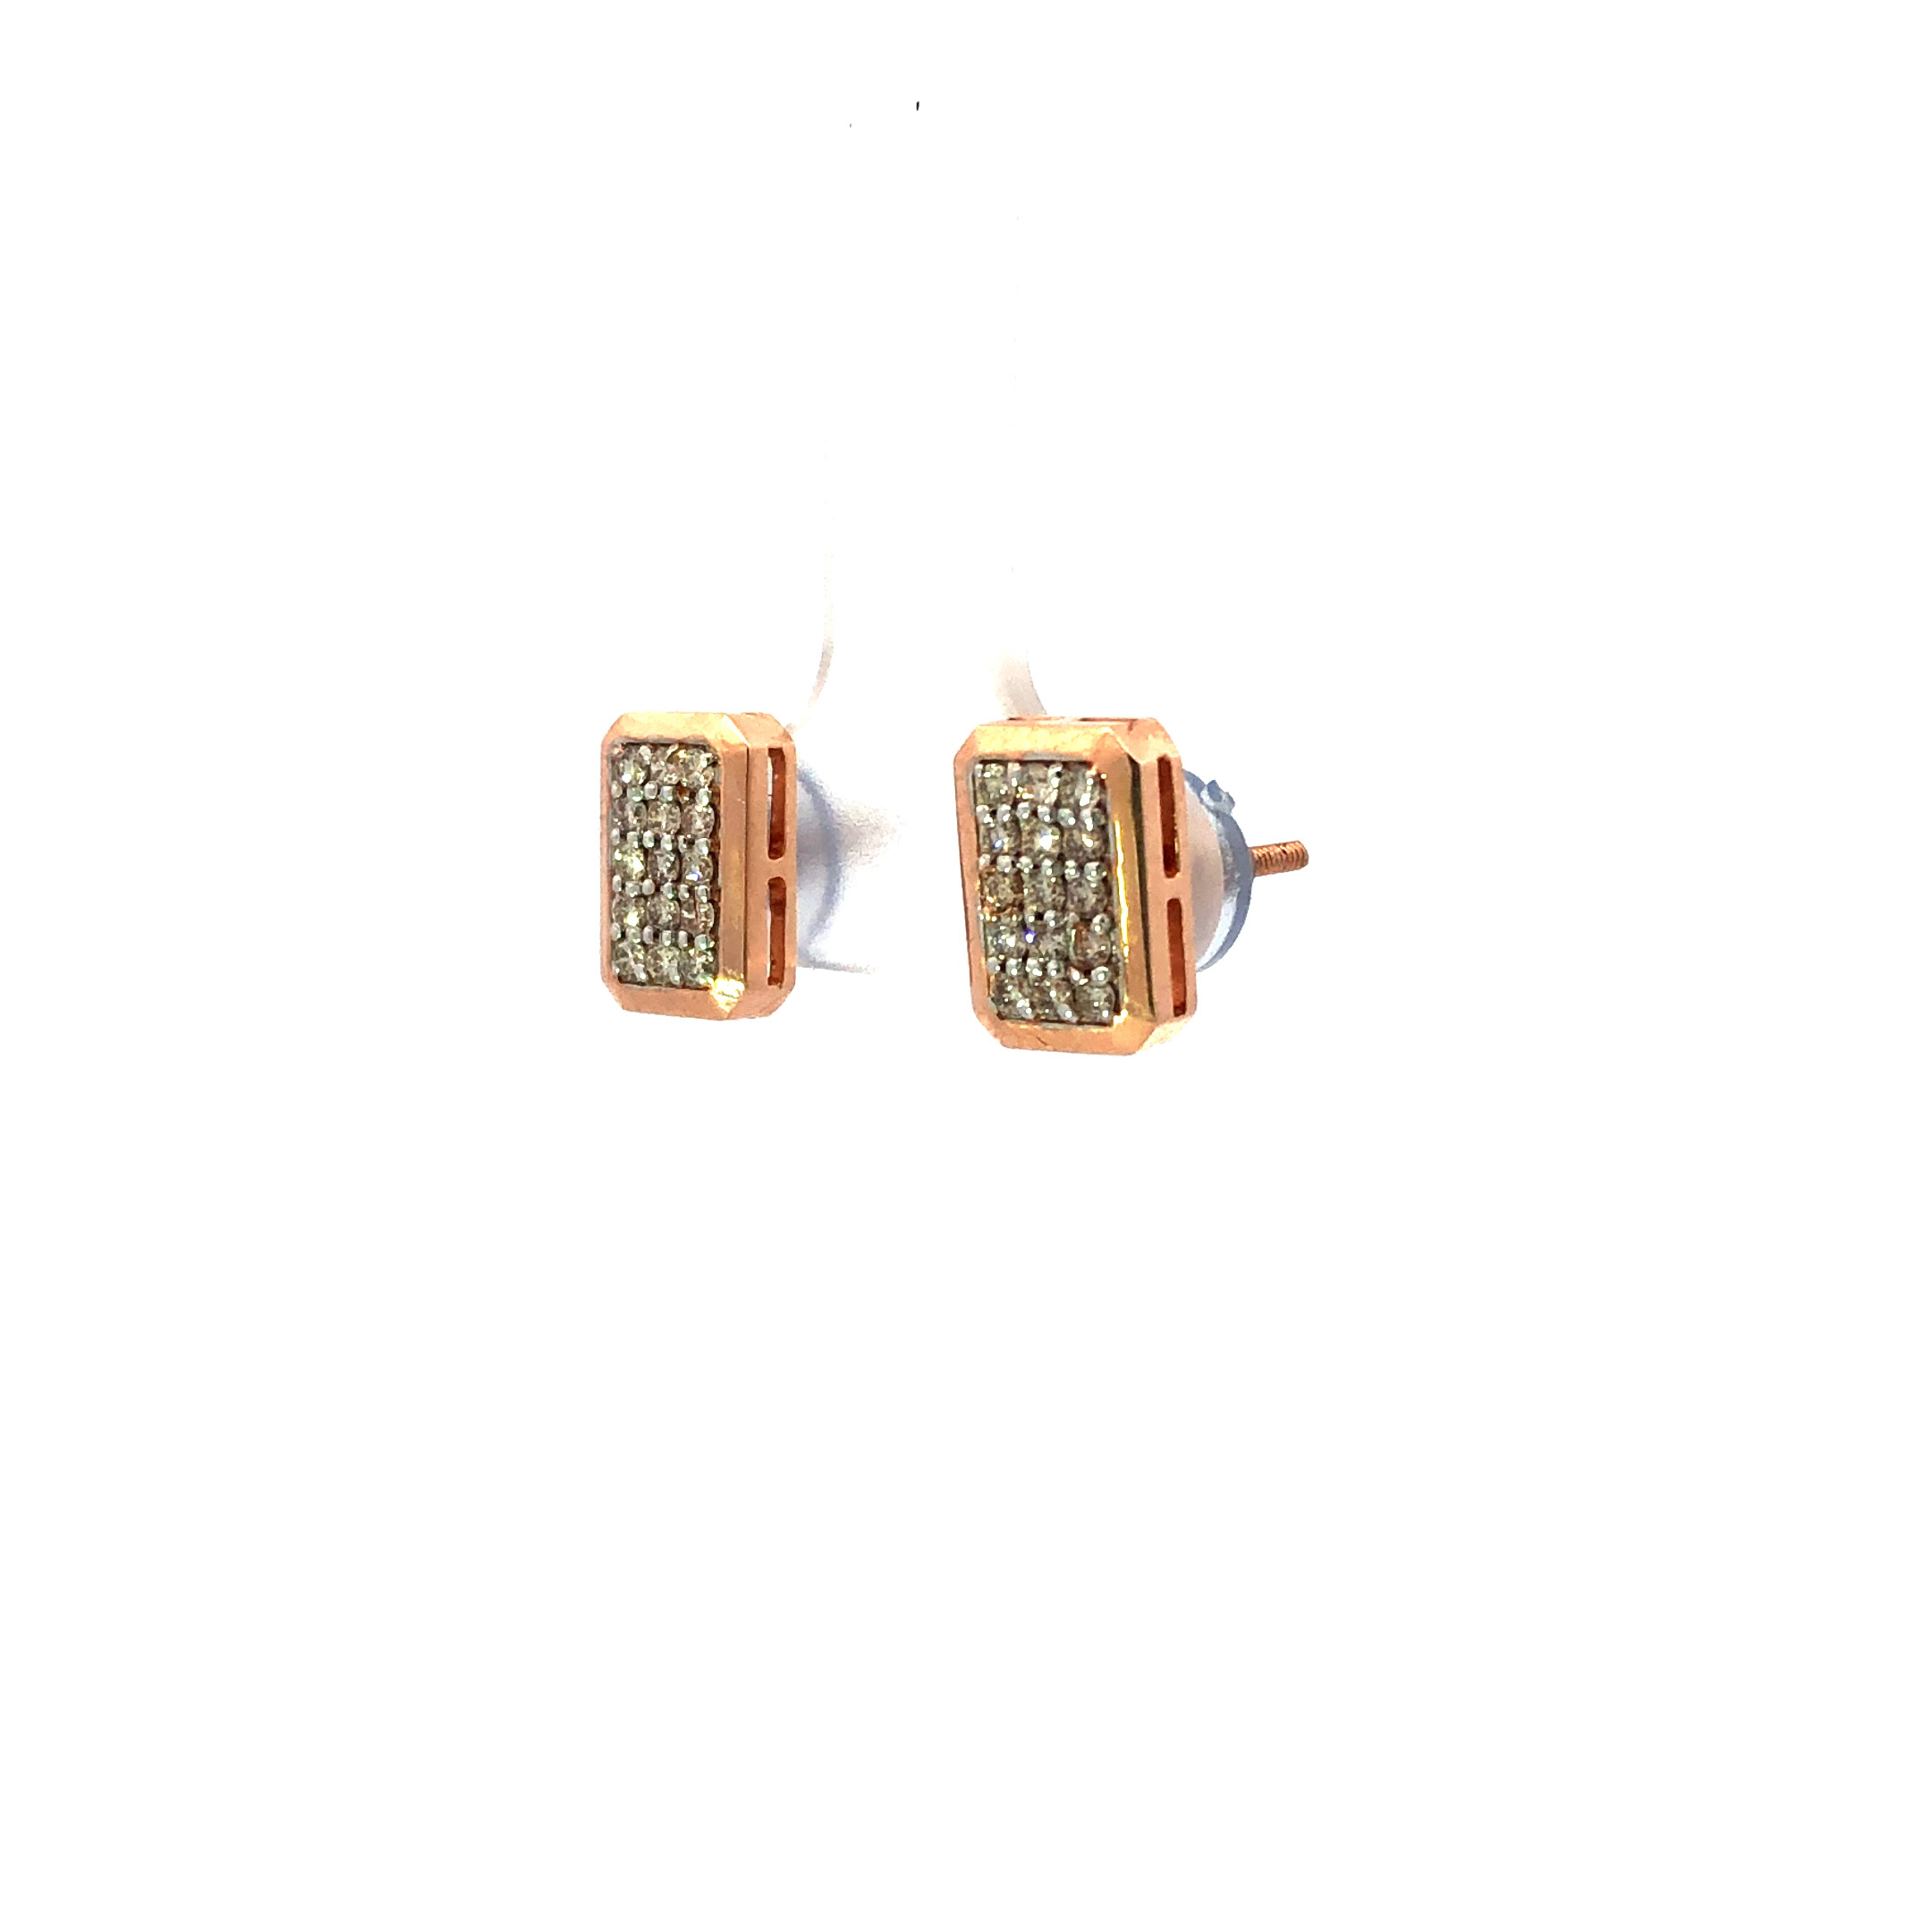 Buy Rose Gold Earrings for Women by Candere By Kalyan Jewellers Online   Ajiocom